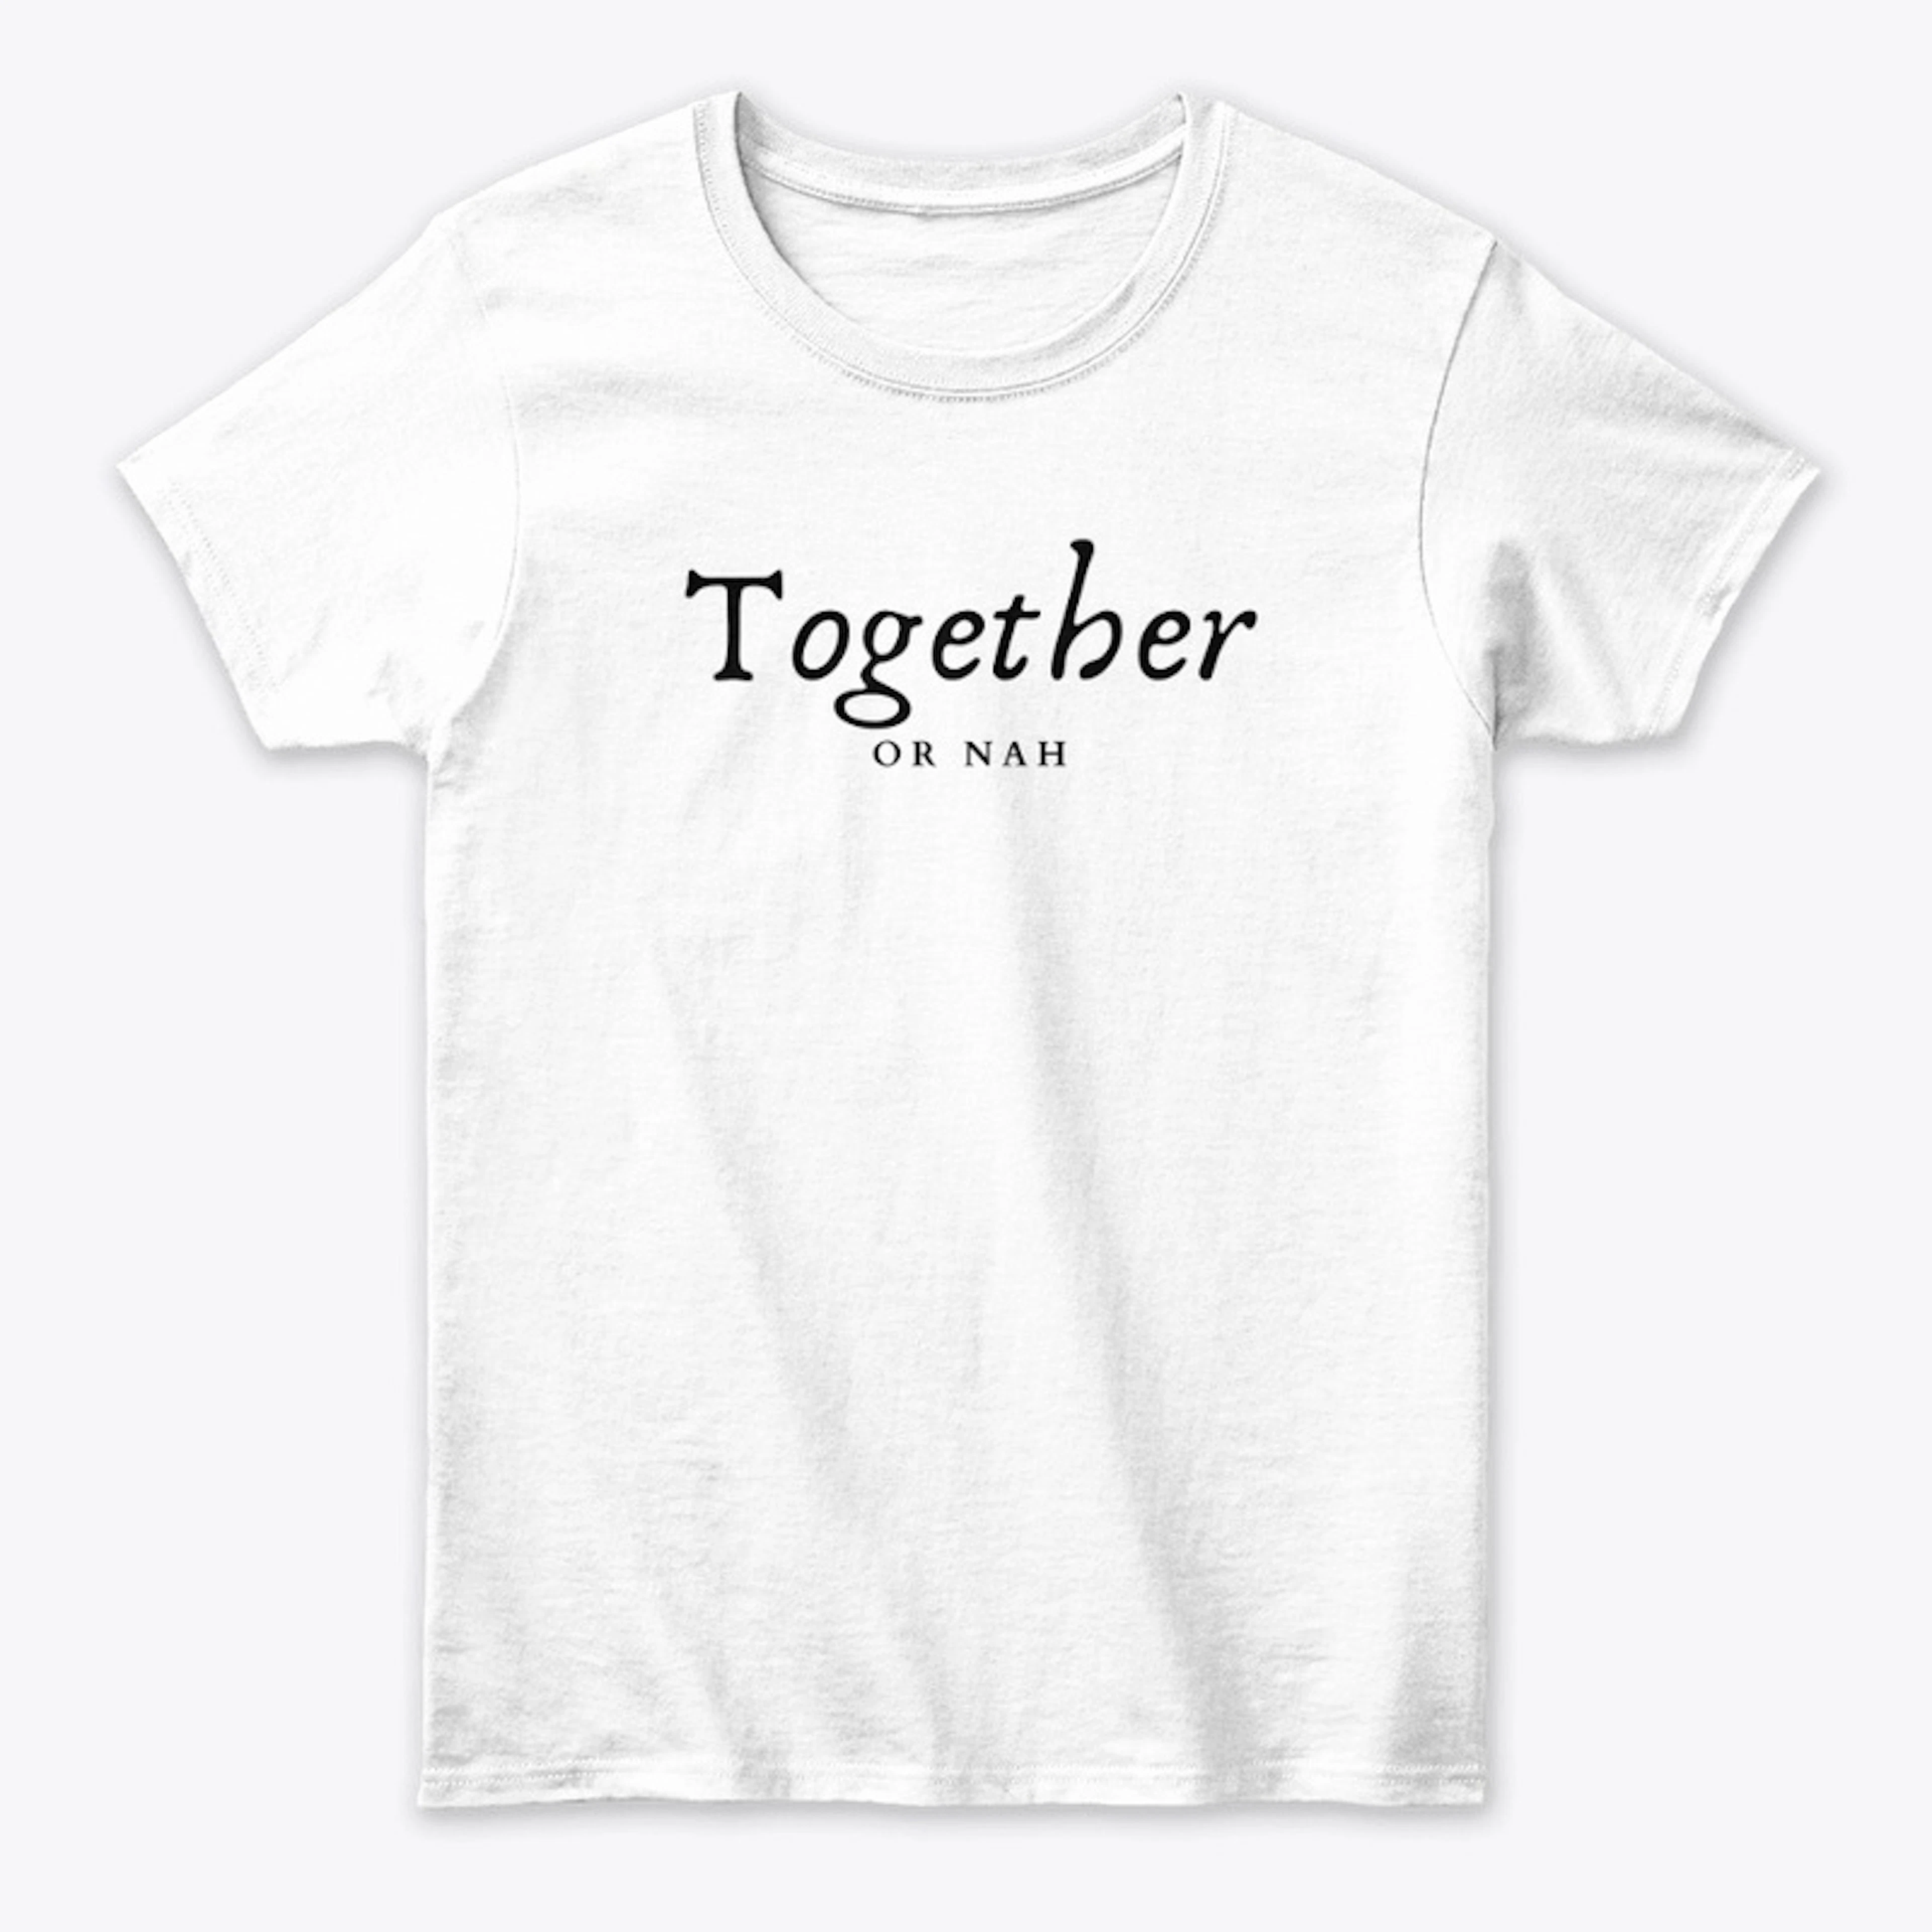 Together or Nah